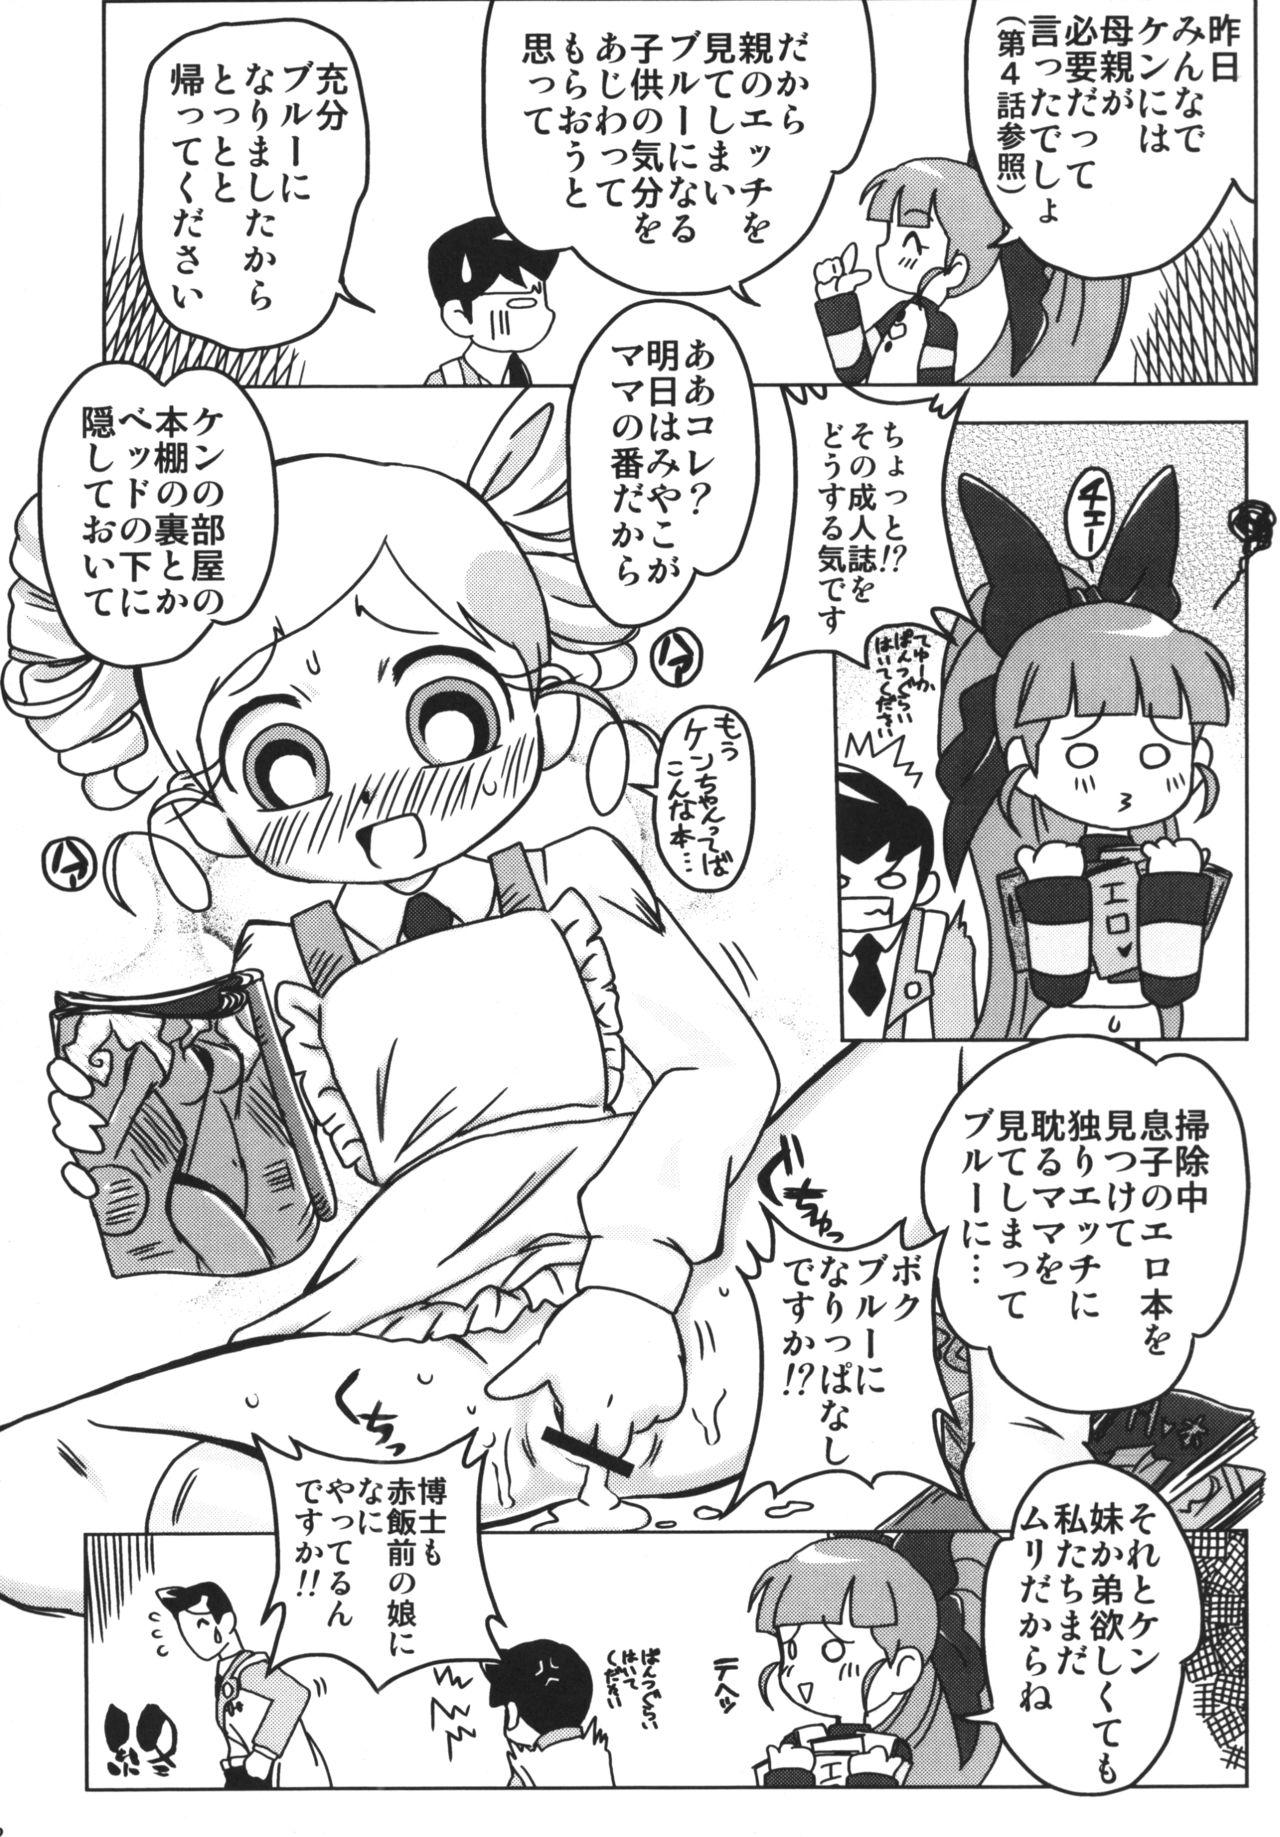 Internal Amashuu NO Pant Taterooru Z - Powerpuff girls z Alternative - Page 11